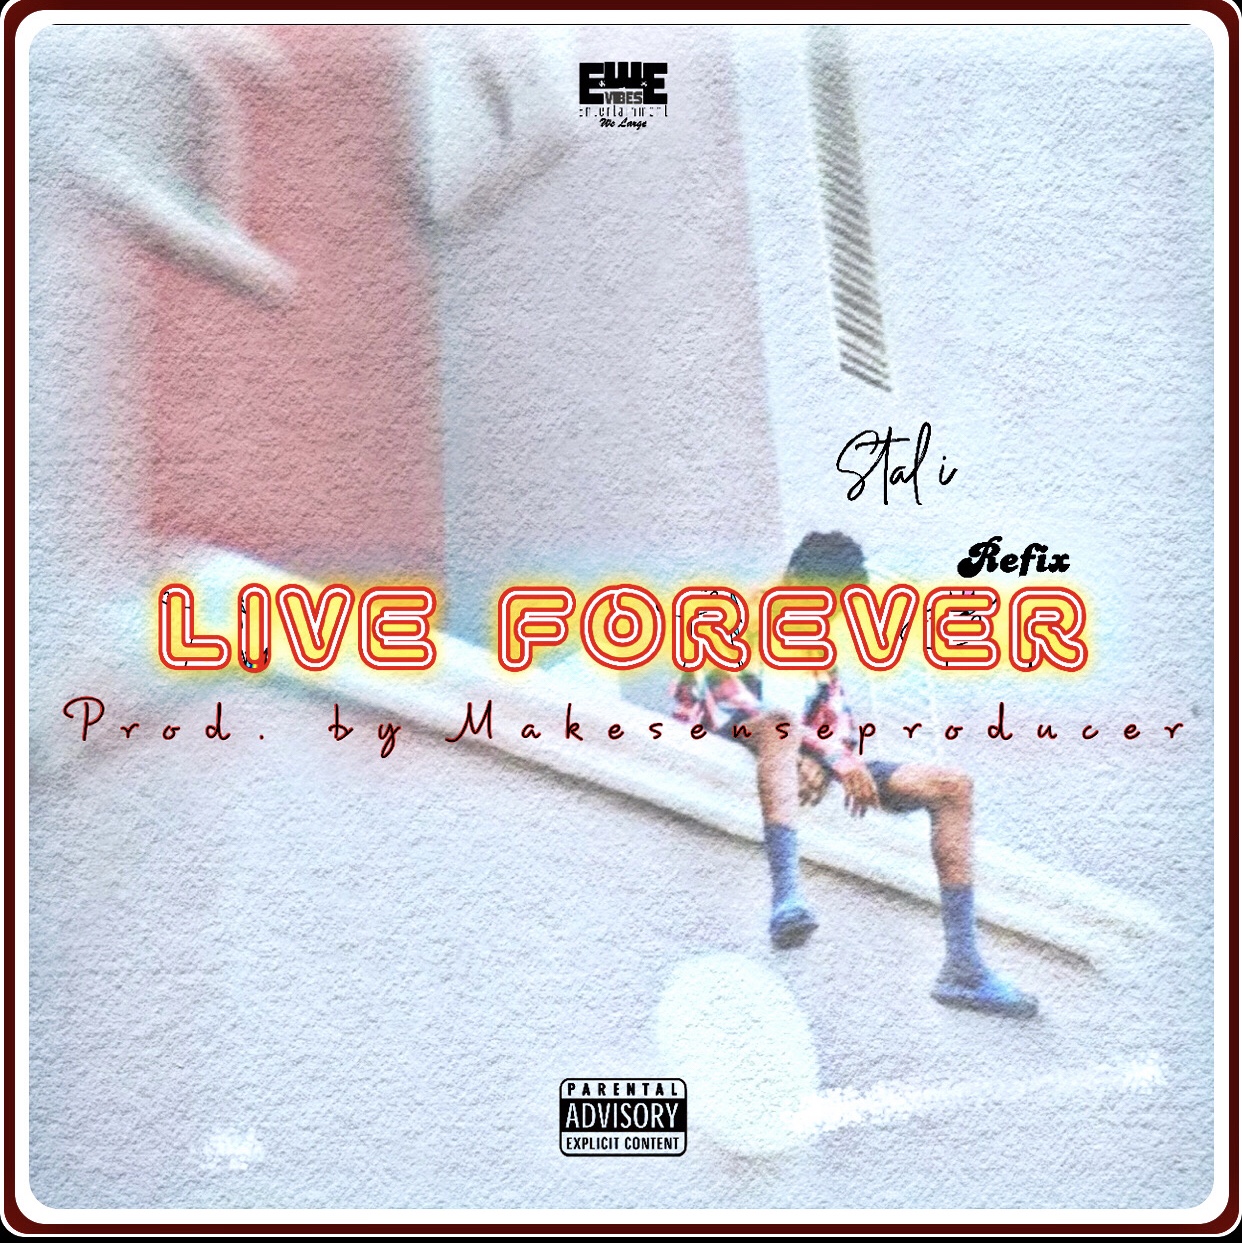 Stal i - Live Forever